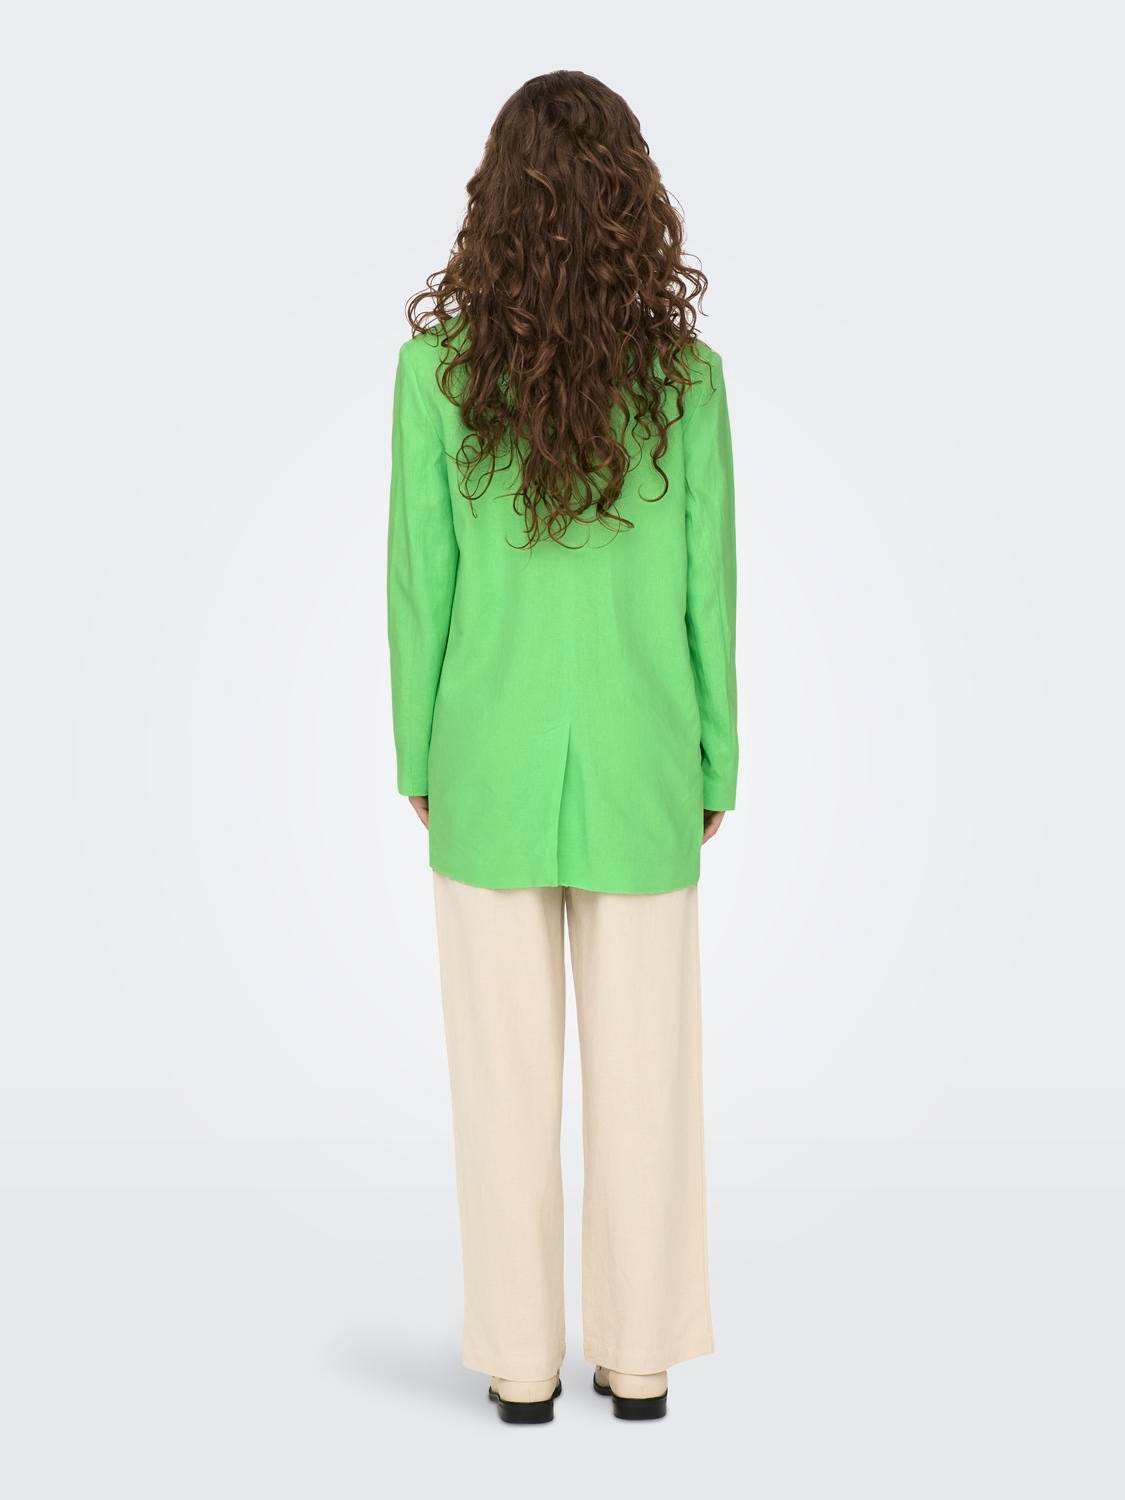 ONLY Blazers Corte oversized Cuello invertido -Summer Green - 15290245